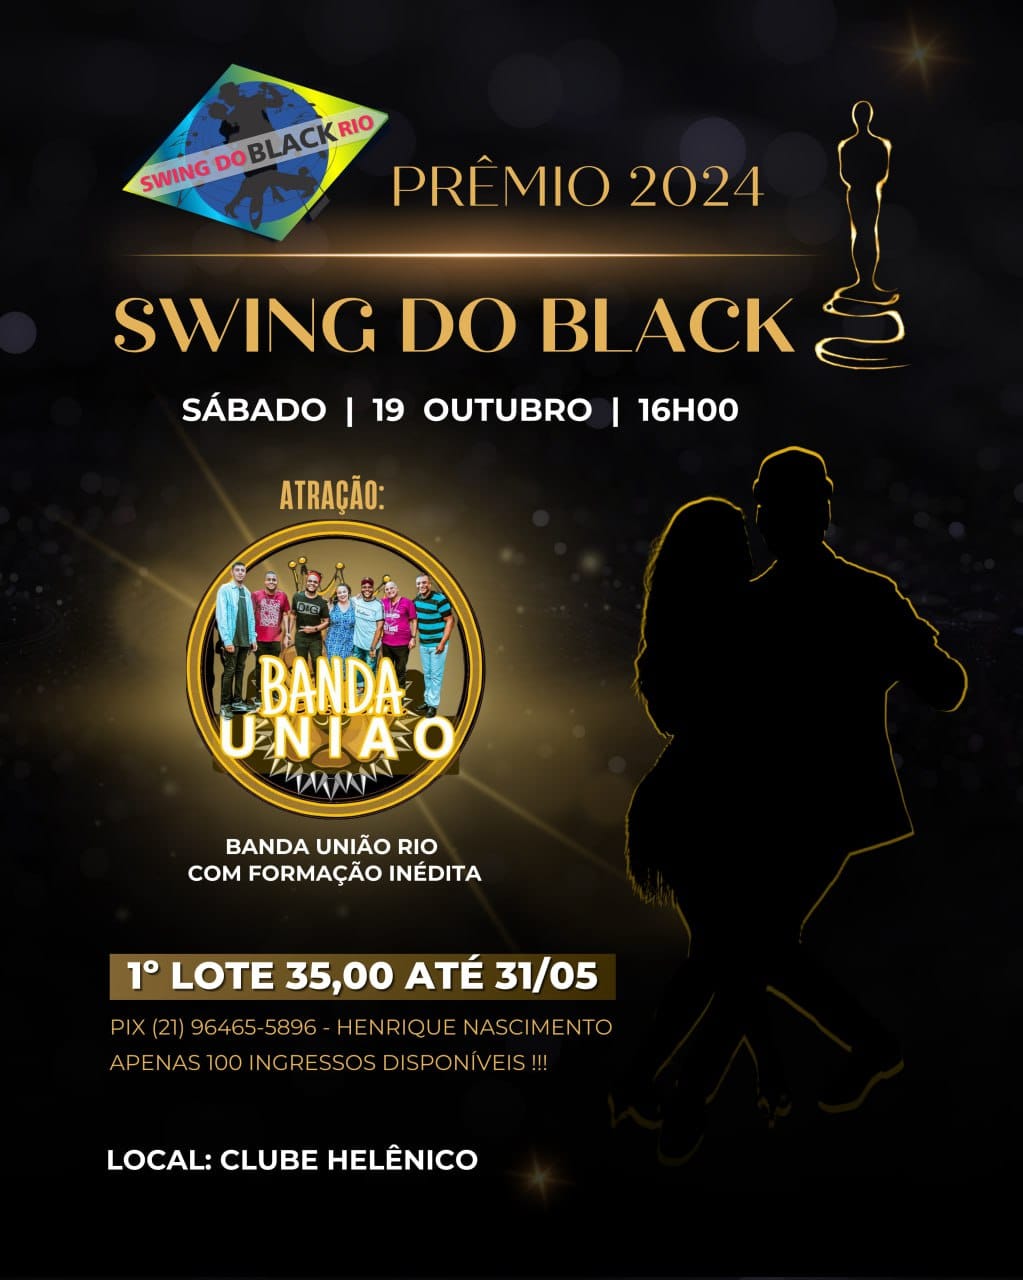 Prêmio Swing do Black 2024